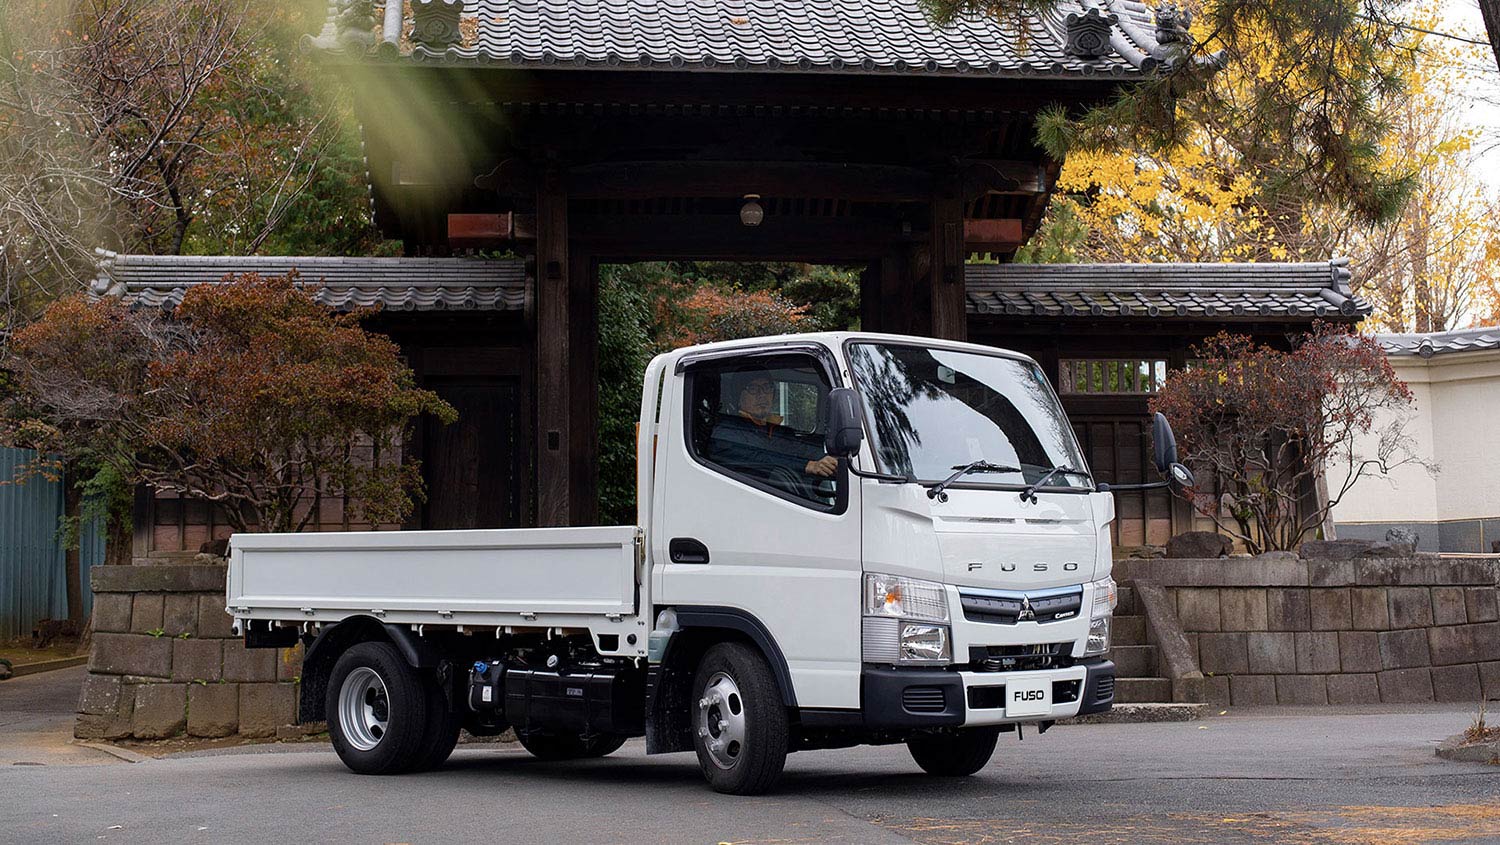 Camioneta Canter 413 Blanca, estacionada por delante de un jardín japonés 